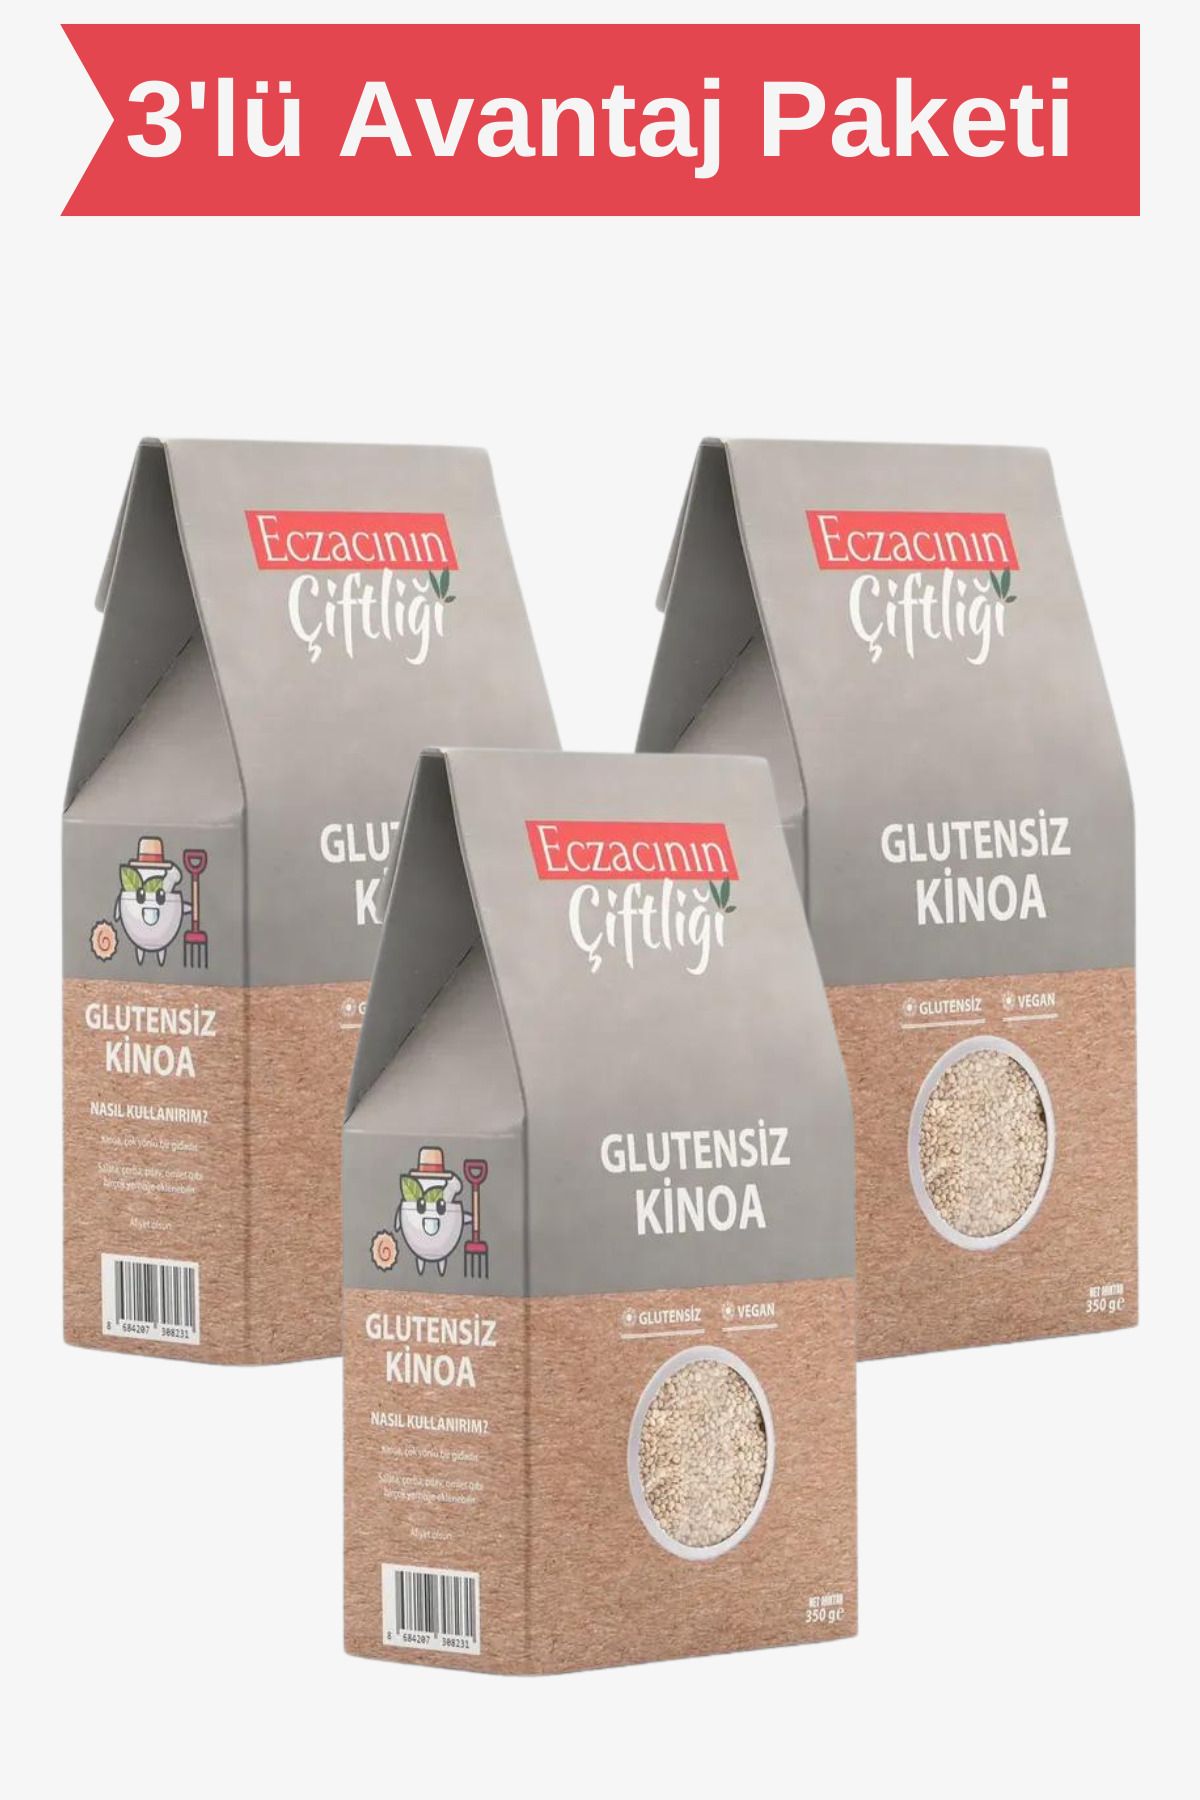 Eczacının Çiftliği Glutensiz Vegan Kinoa 350g X 3 Adet - Quinoa